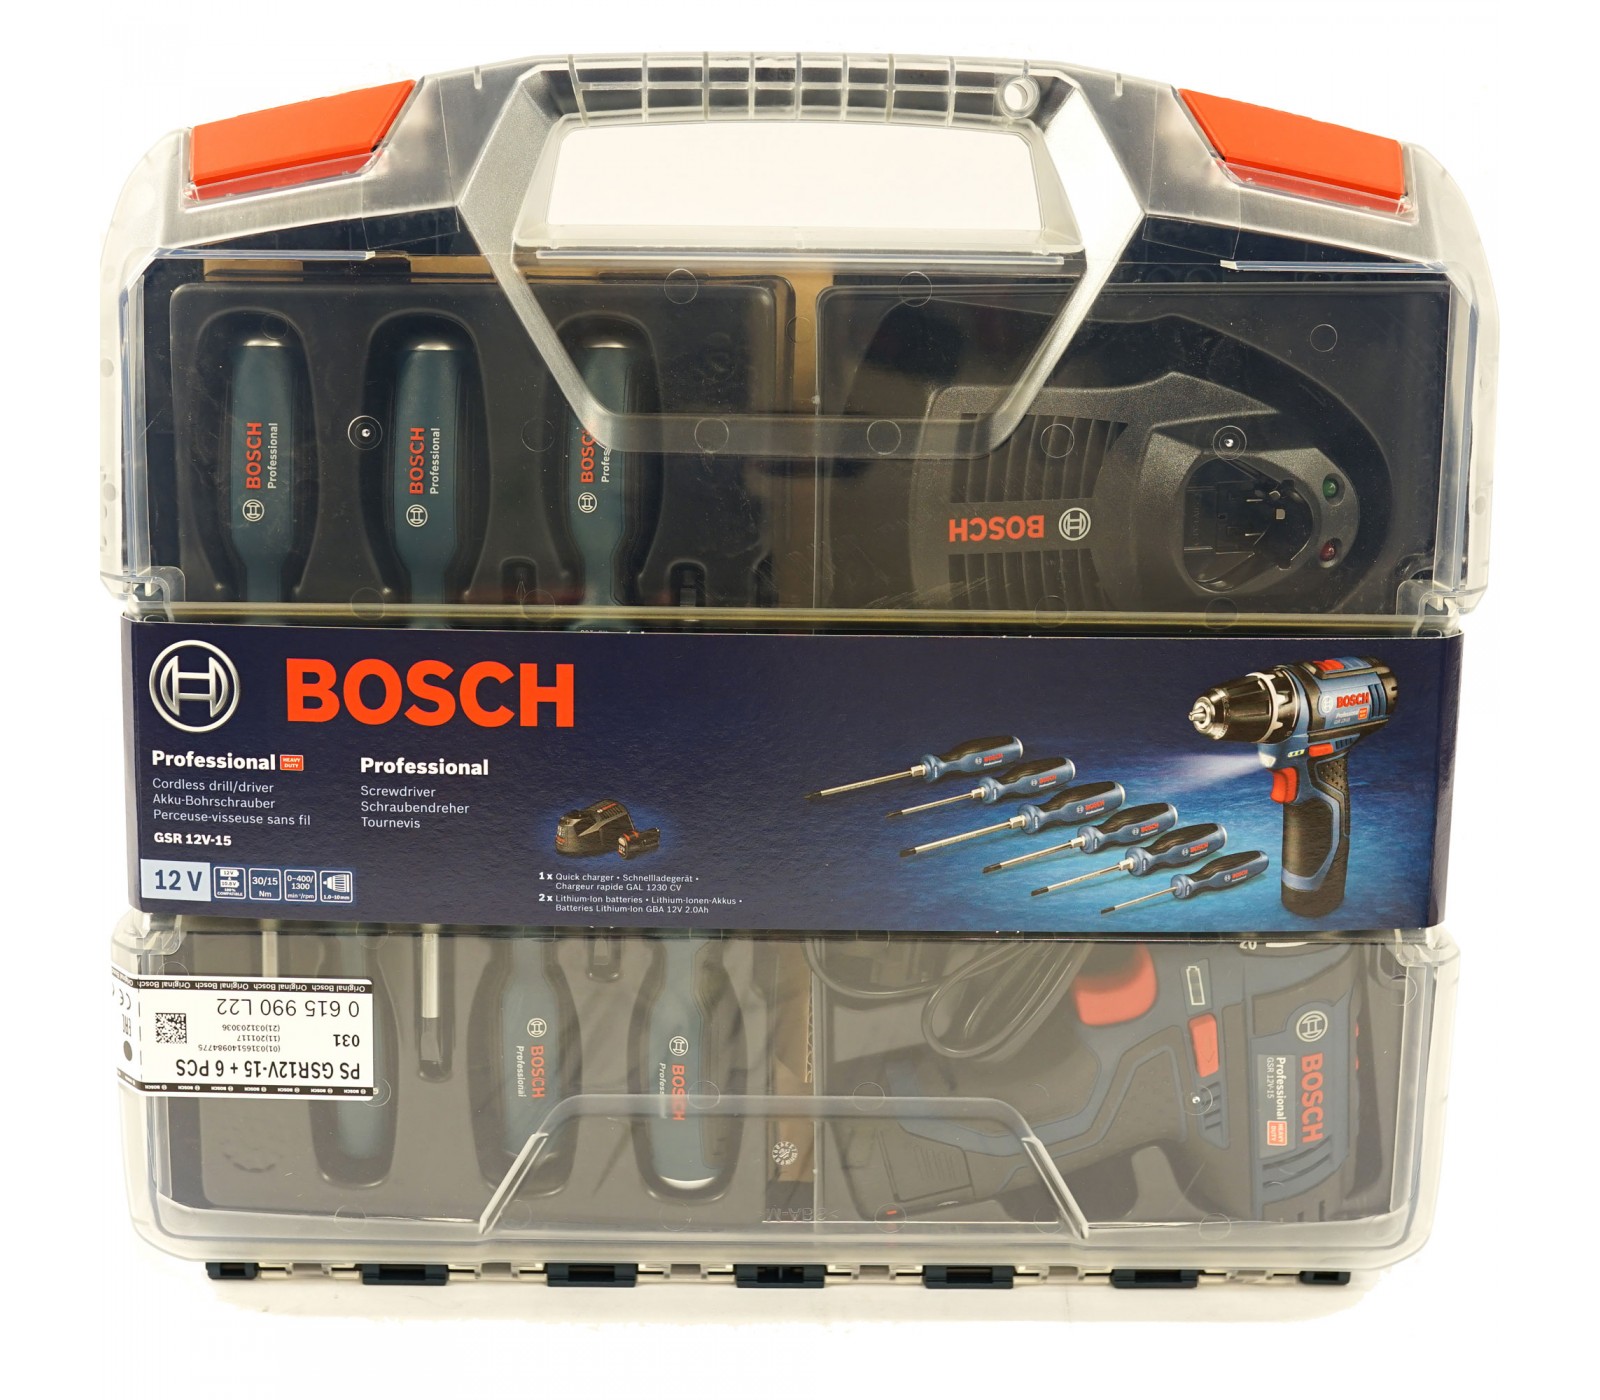 Bosch Professional Set perceuse-visseuse sans fil GSR 18V-55